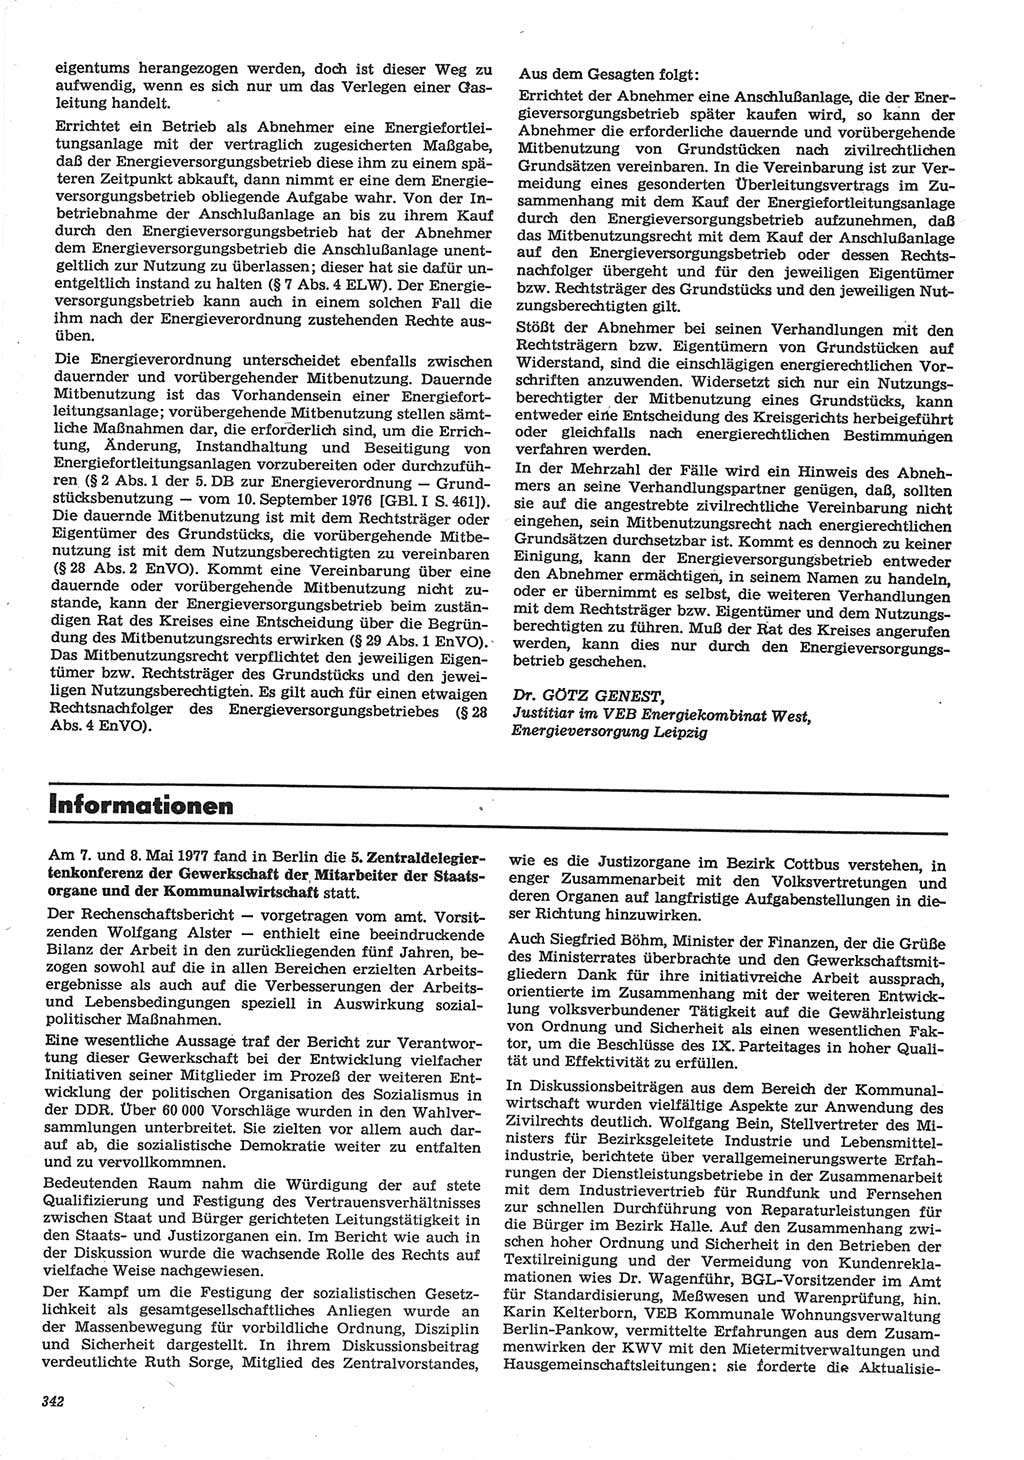 Neue Justiz (NJ), Zeitschrift für Recht und Rechtswissenschaft-Zeitschrift, sozialistisches Recht und Gesetzlichkeit, 31. Jahrgang 1977, Seite 342 (NJ DDR 1977, S. 342)